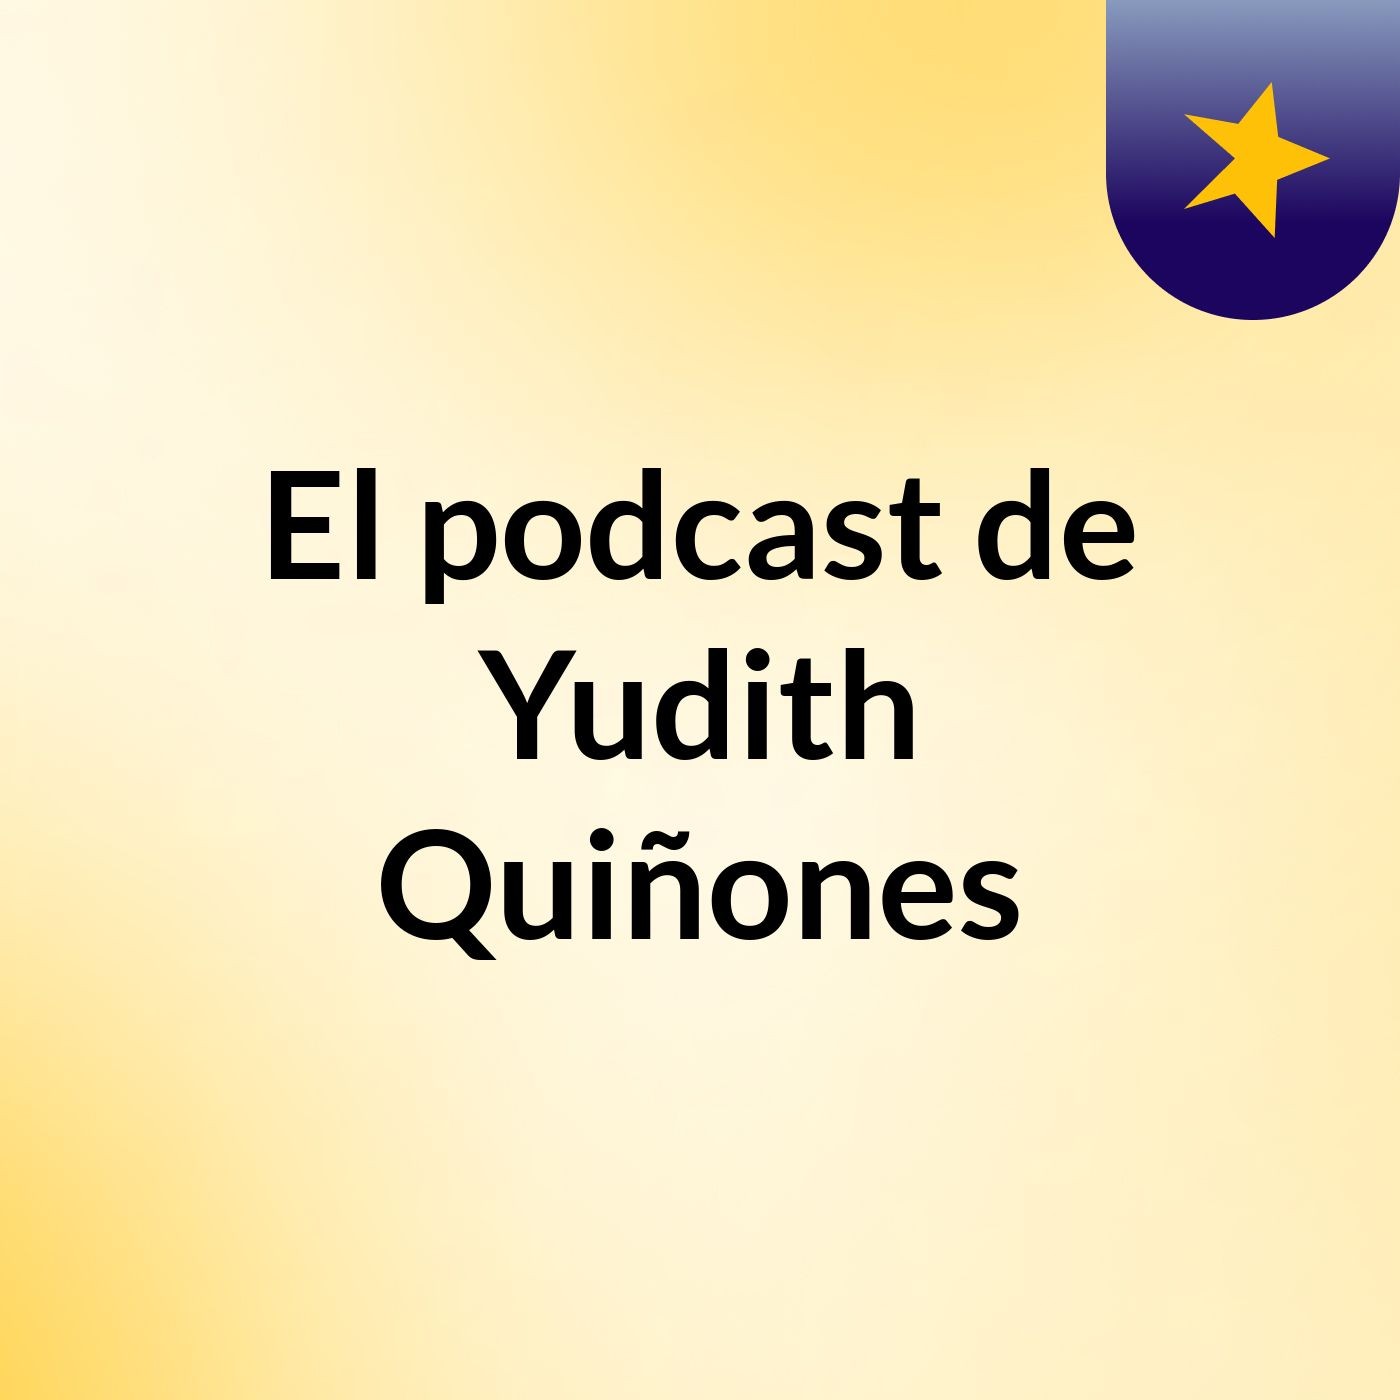 Episodio 2 - El podcast de Yudith Quiñones